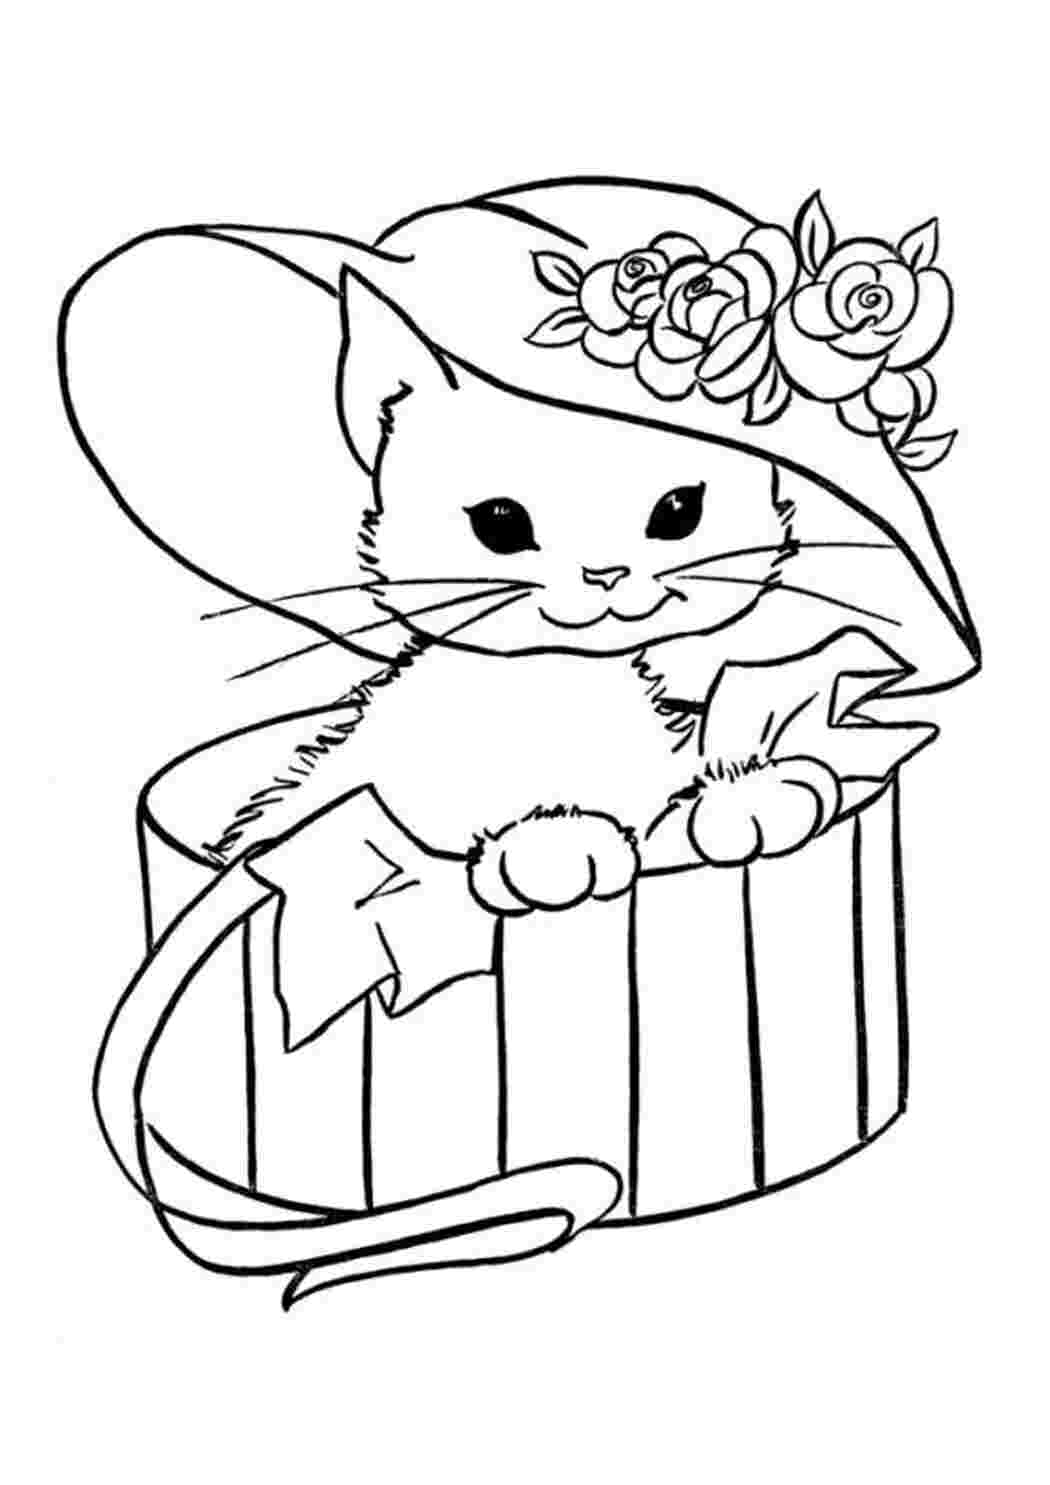 Раскраска Кот для детей распечатать бесплатно или скачать